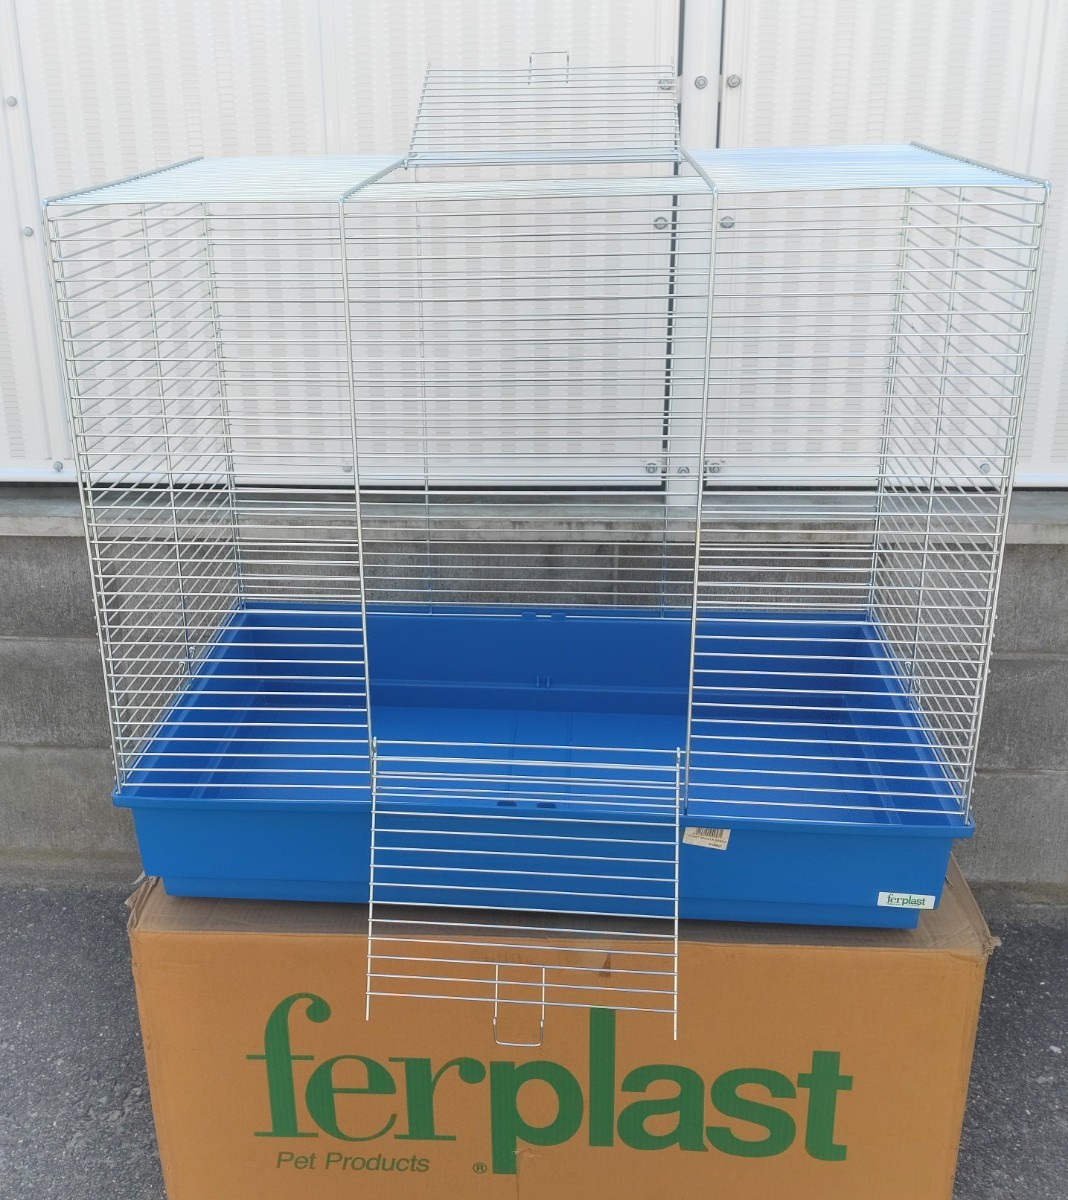  small animals ferret cage blue 78×49×69. Italy ferplast ferret Furet FURET ZINCATA GABBIA 570594 8010690049571 3h190s